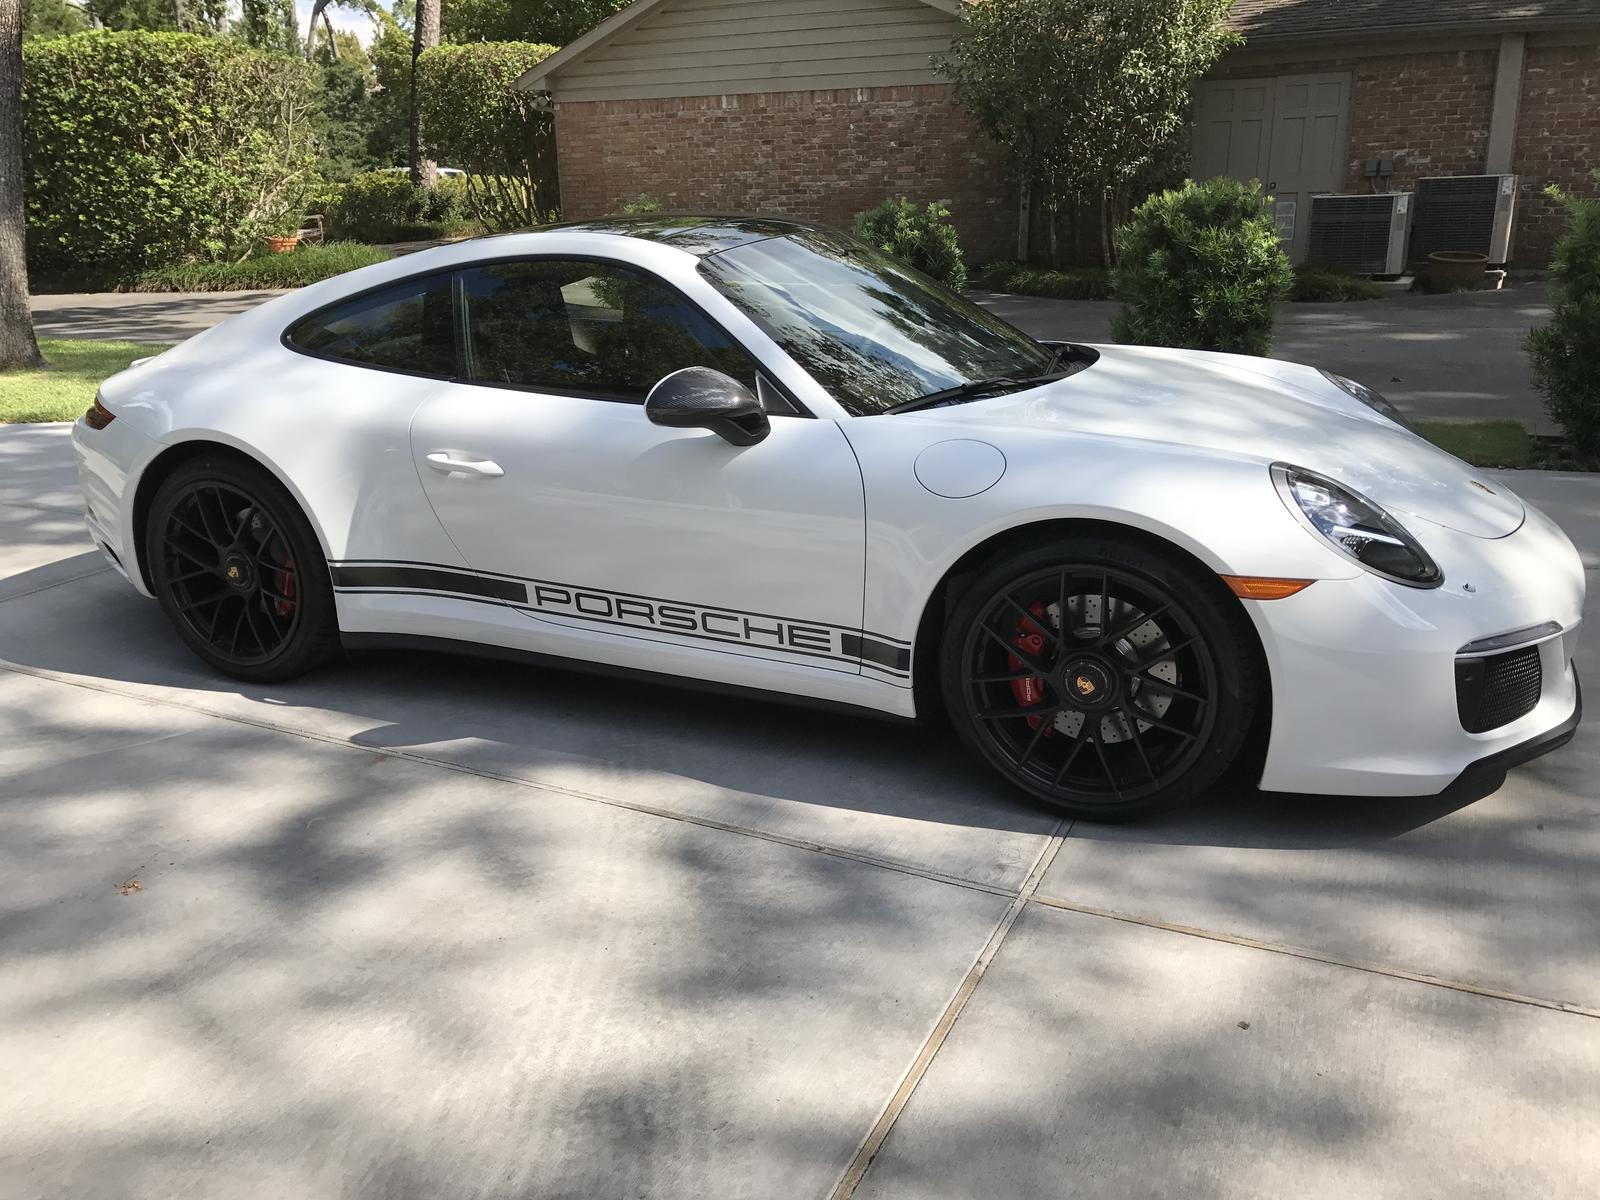 Porsche Side Decal Opinion - Rennlist - Porsche Discussion Forums